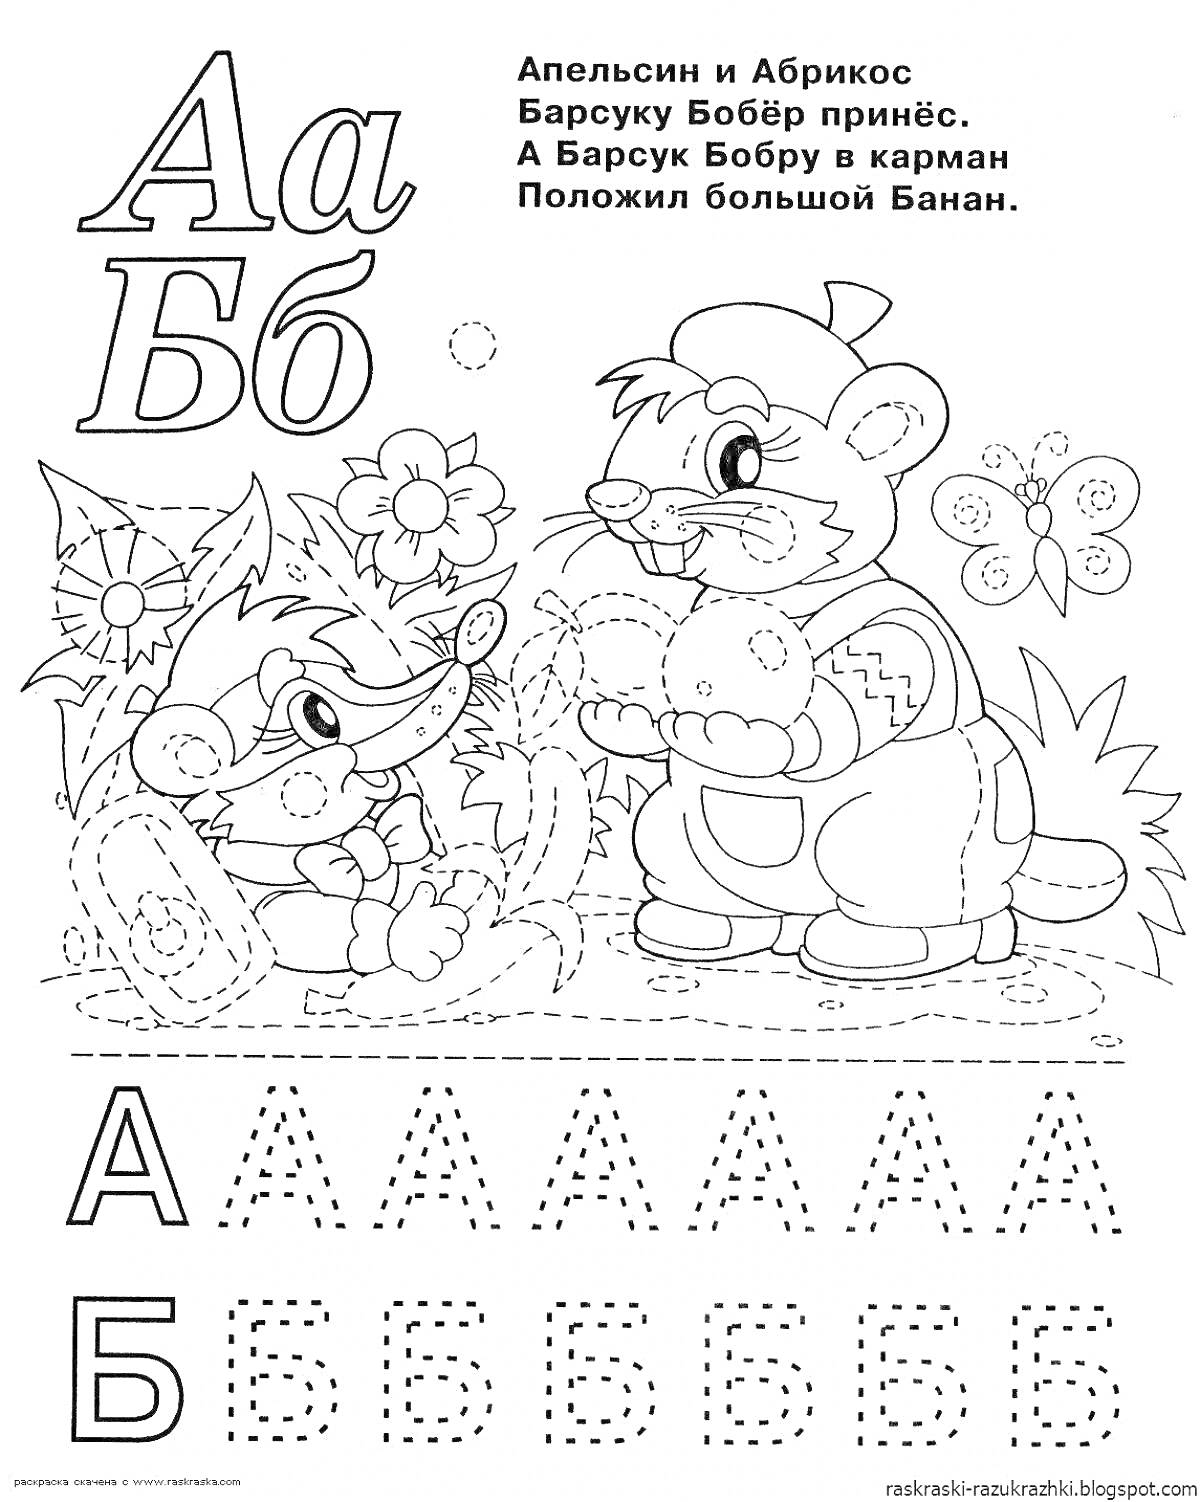 Раскраска Алфавитная раскраска, буквы А и Б, барсук с бобром, енот, описание, цветы, точечные линии для обводки букв